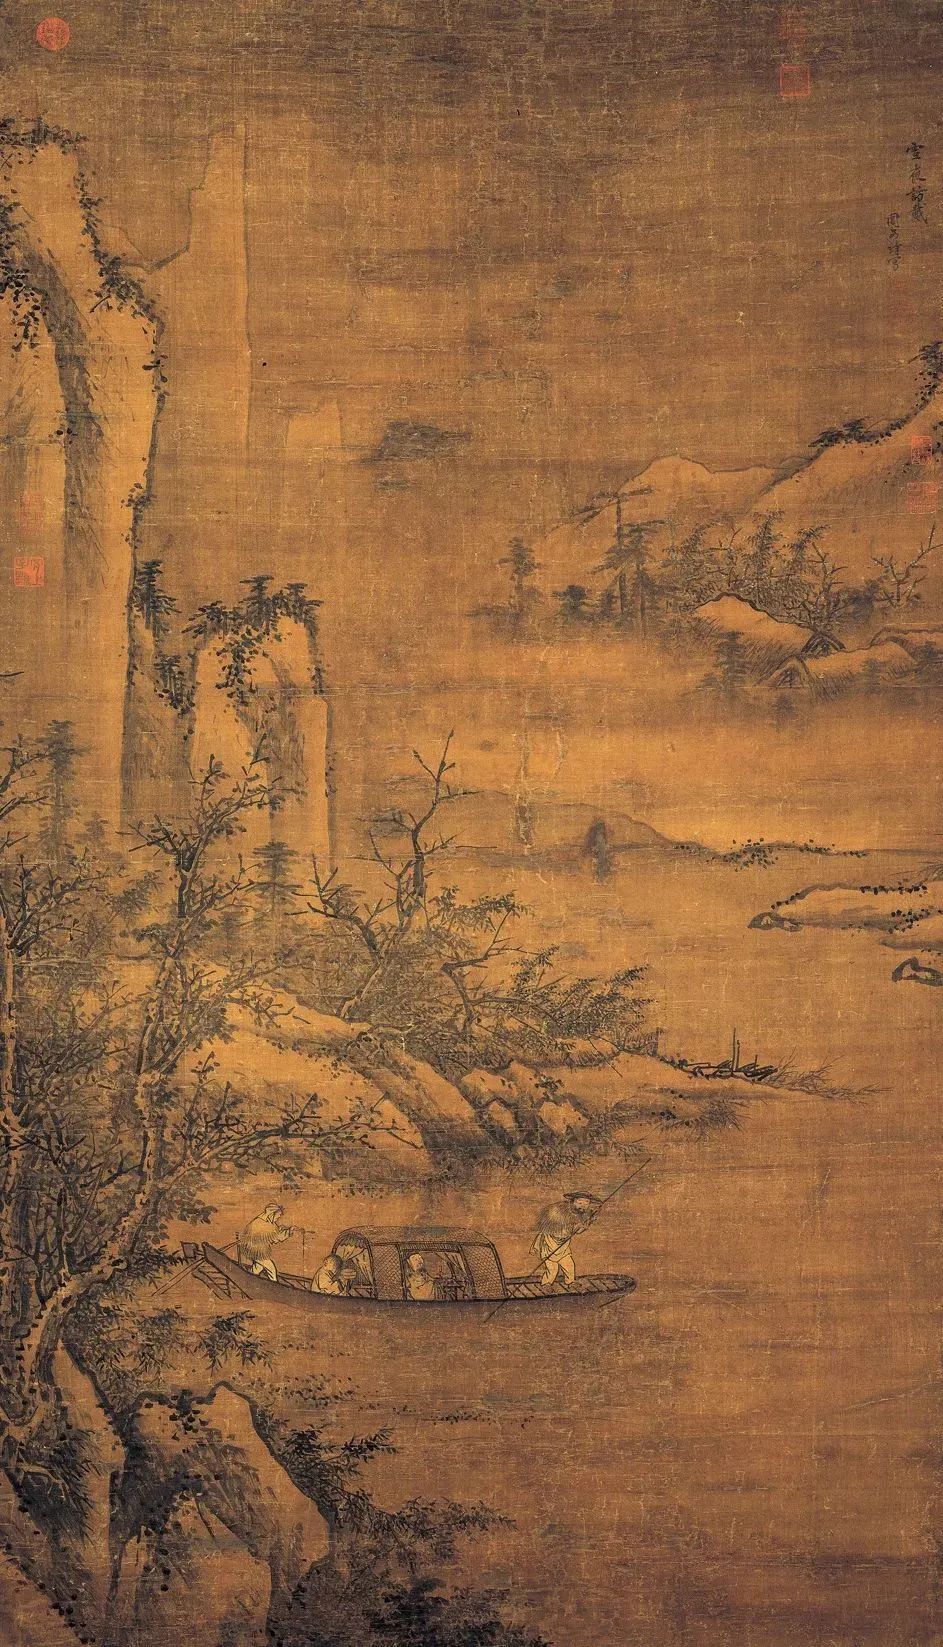 明·周文靖 雪夜访戴图 台北故宫博物院藏人物分析王子猷:名徽之,字子